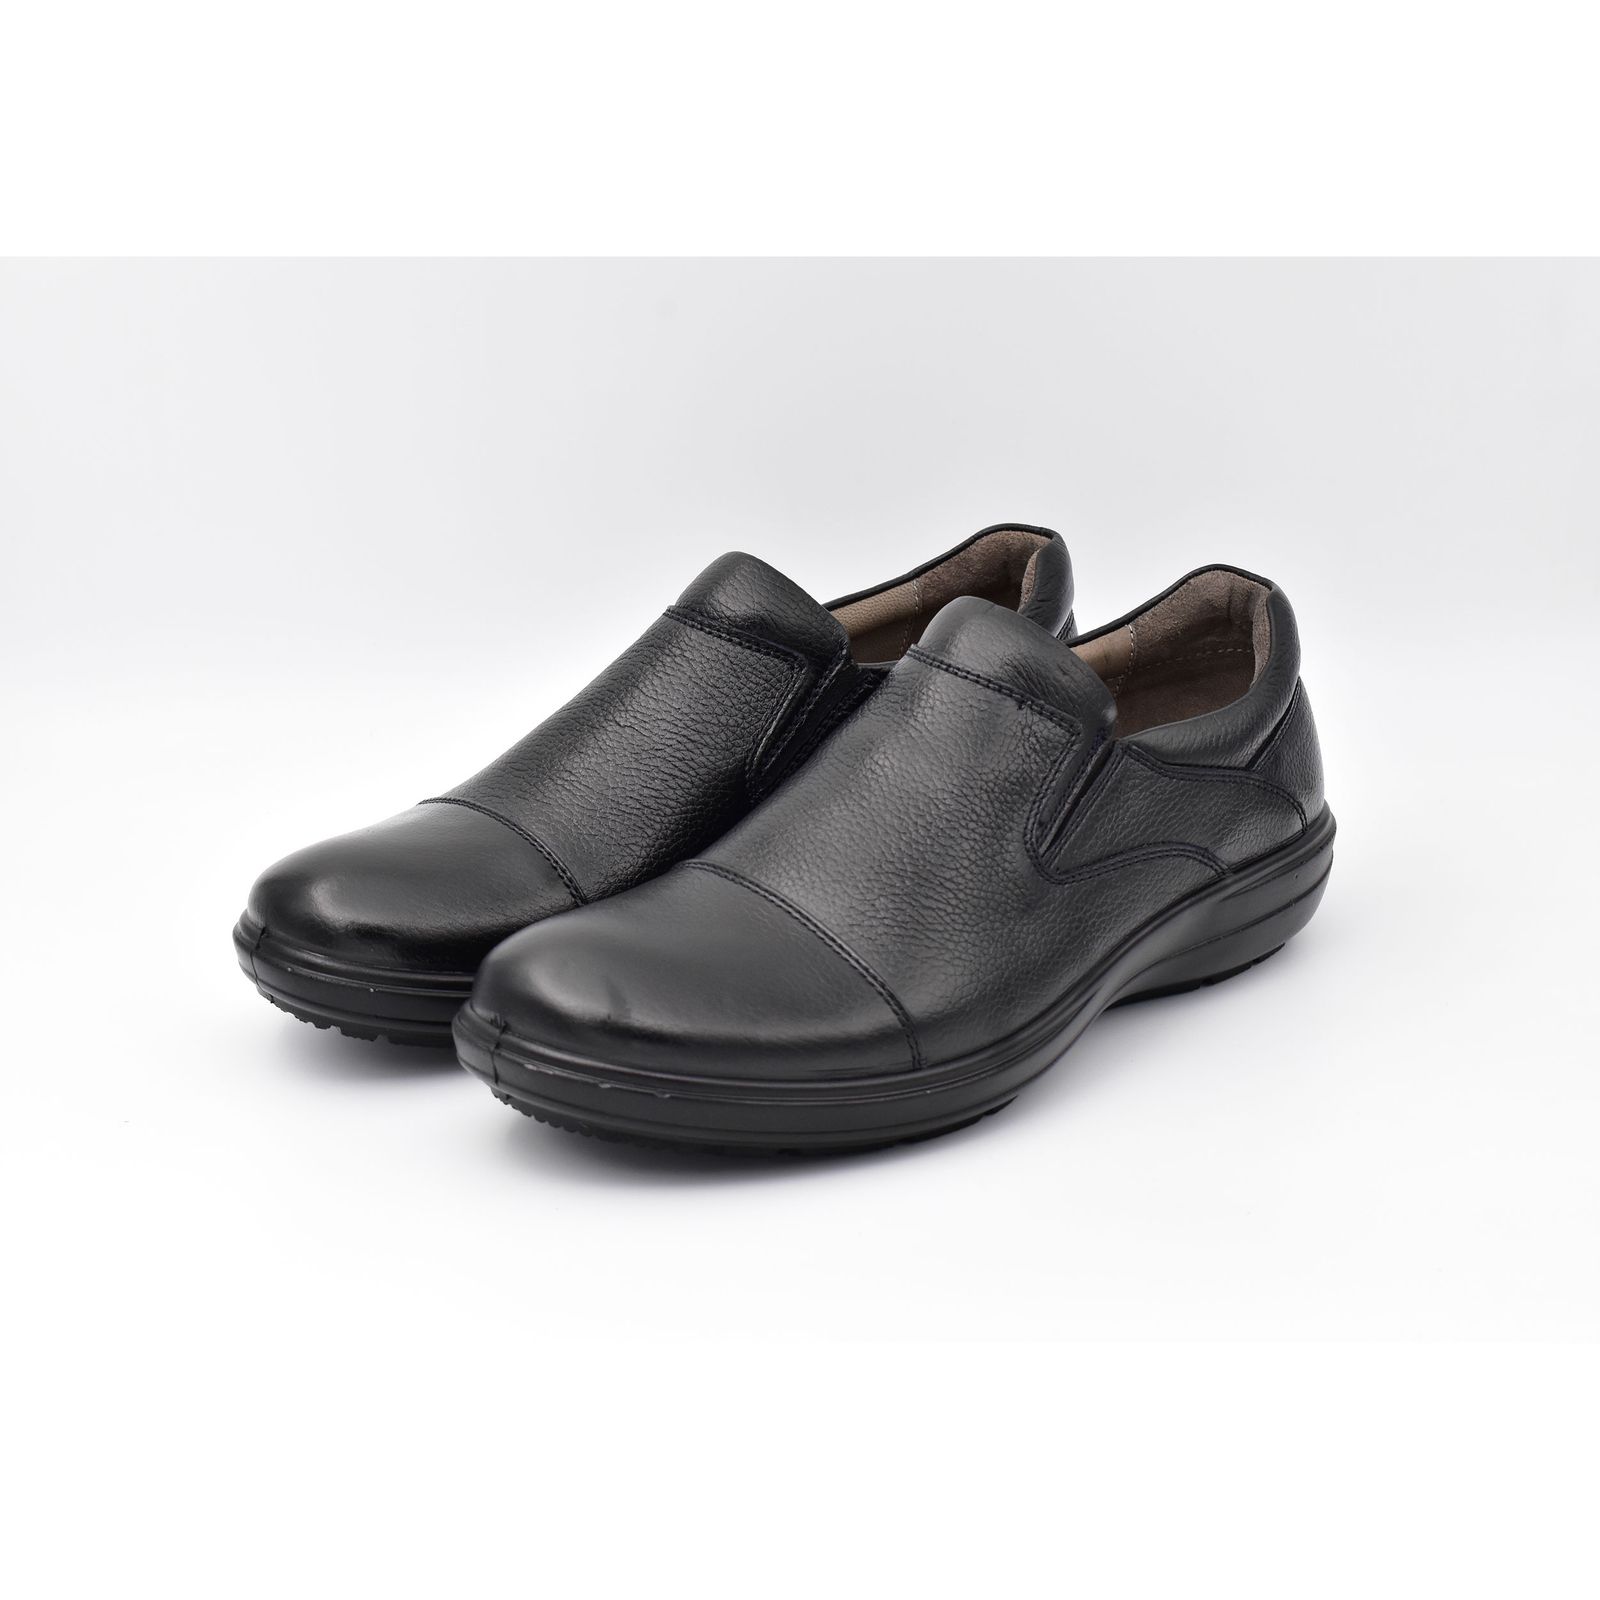 کفش روزمره مردانه پاما مدل TT کد G1123 -  - 4